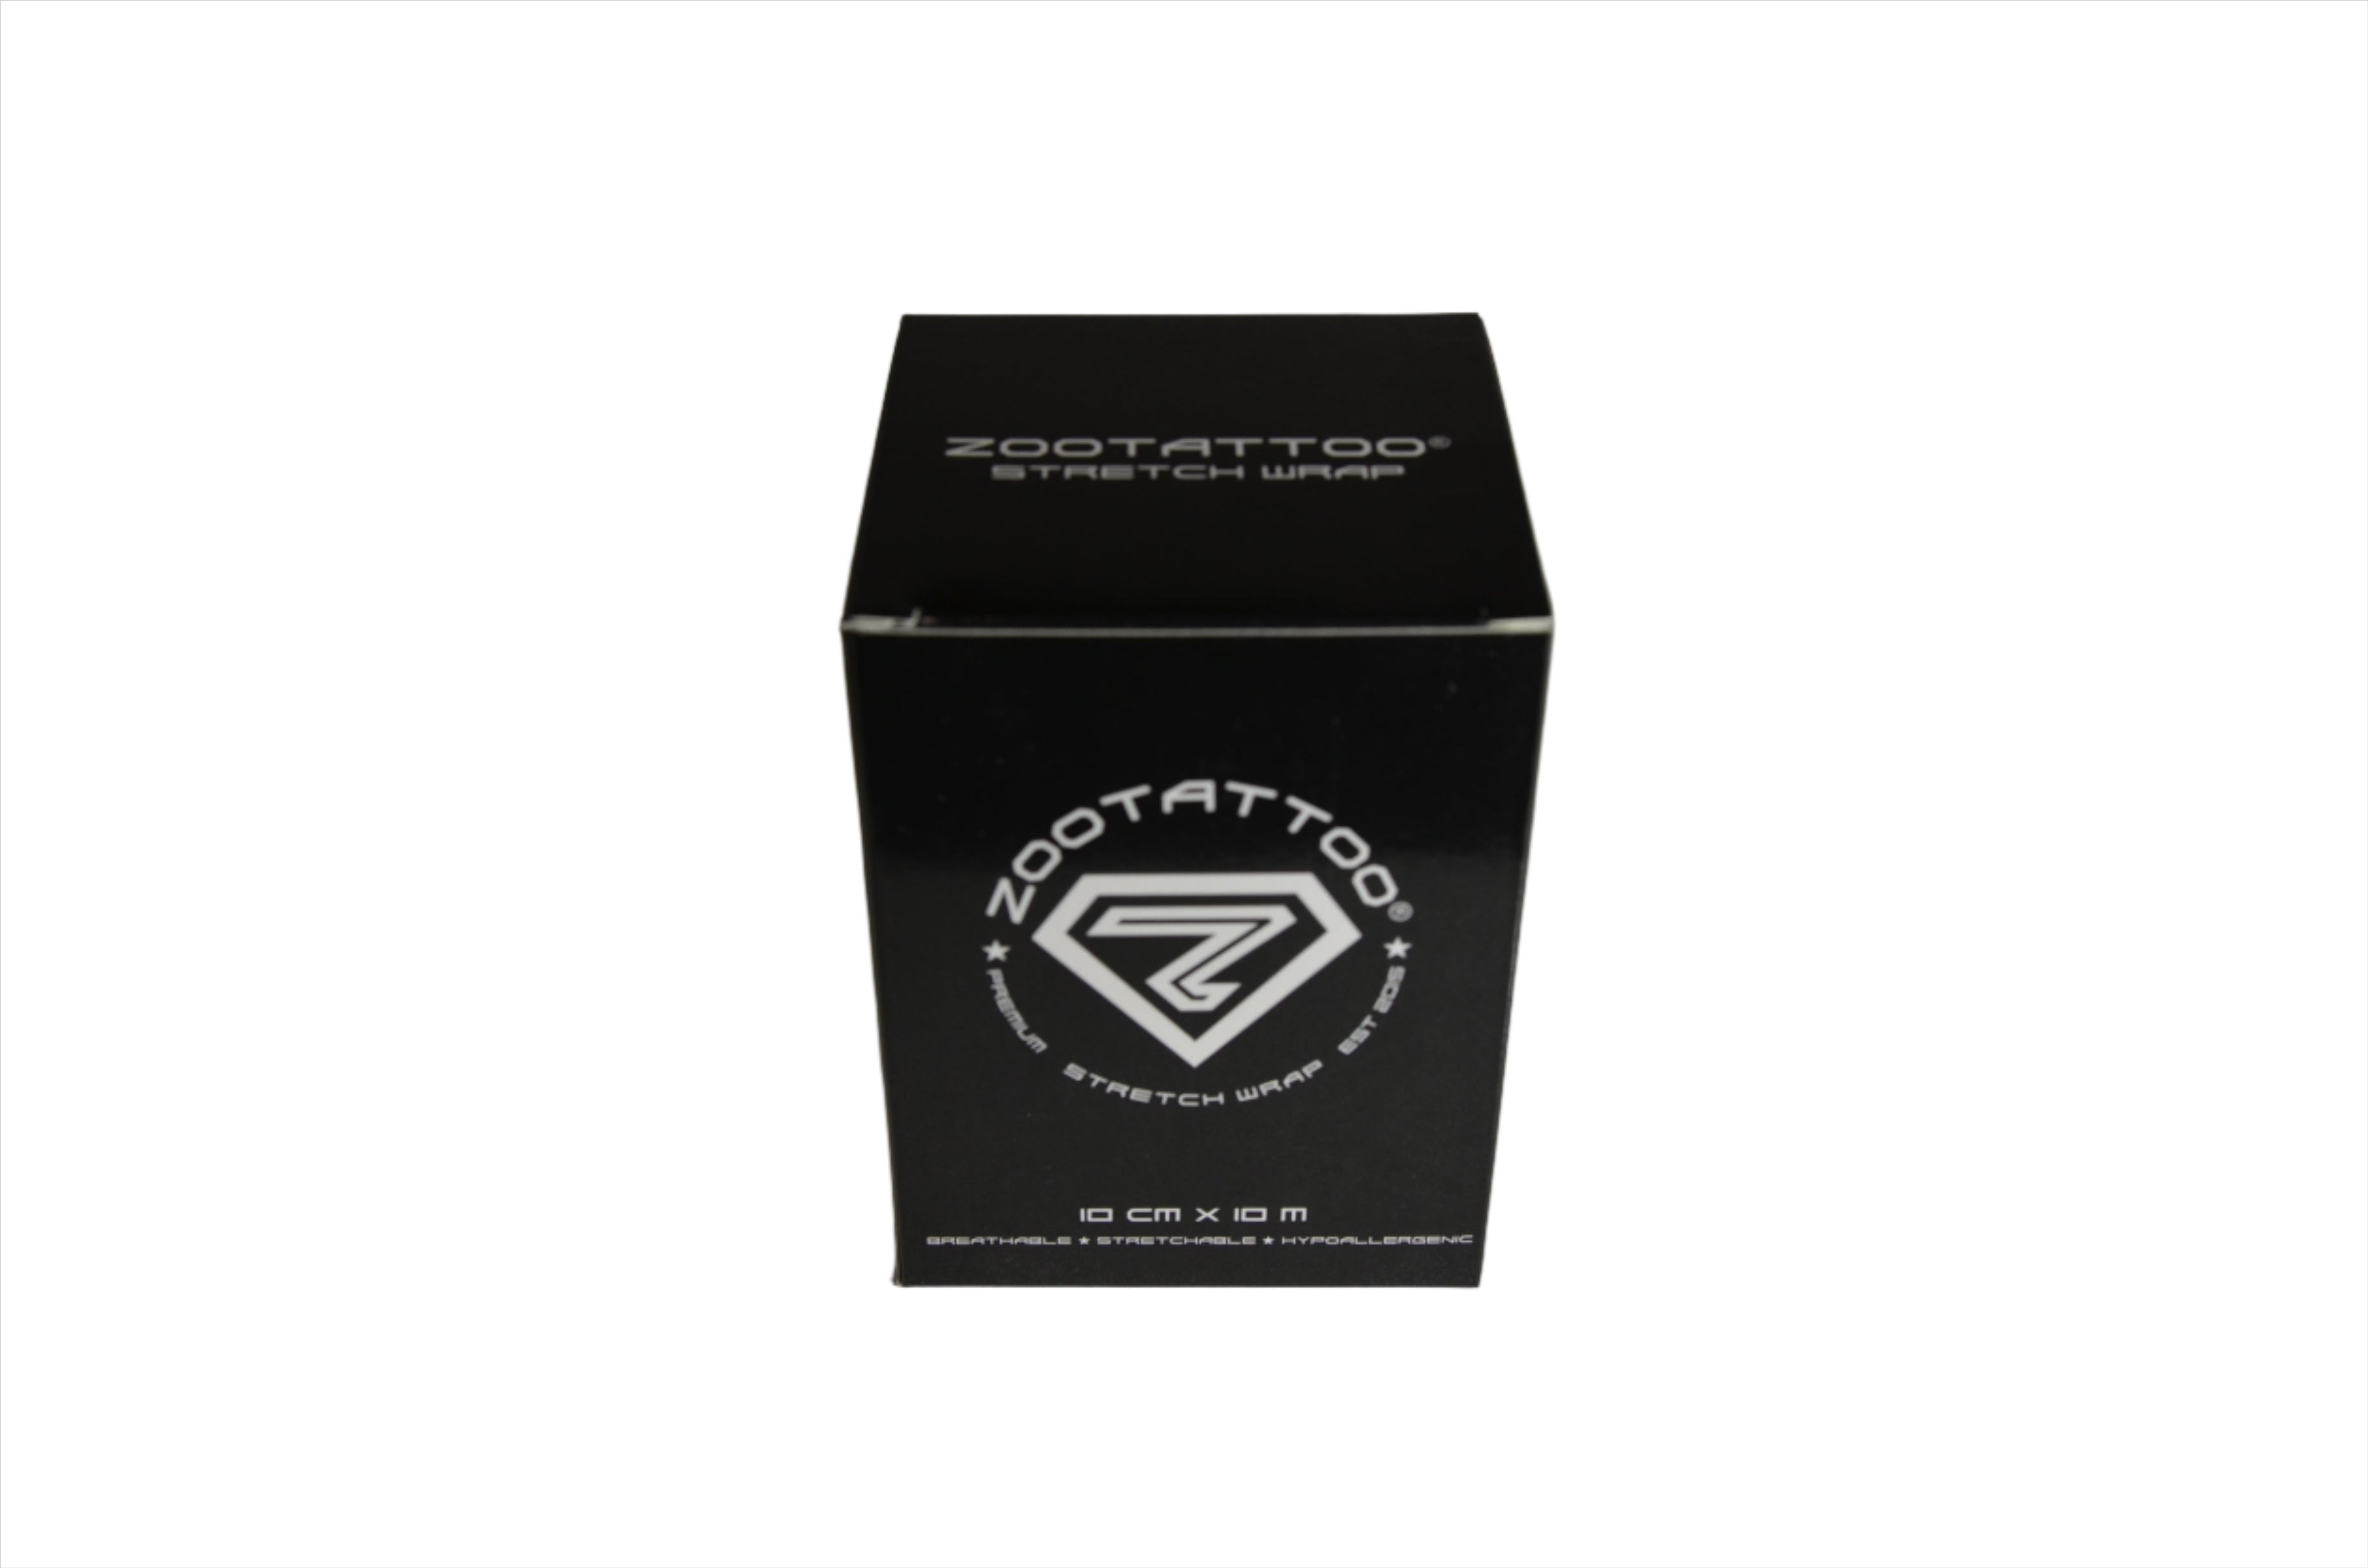 ZOOTATTOO® Stretch Wrap Wholesale 50 Box